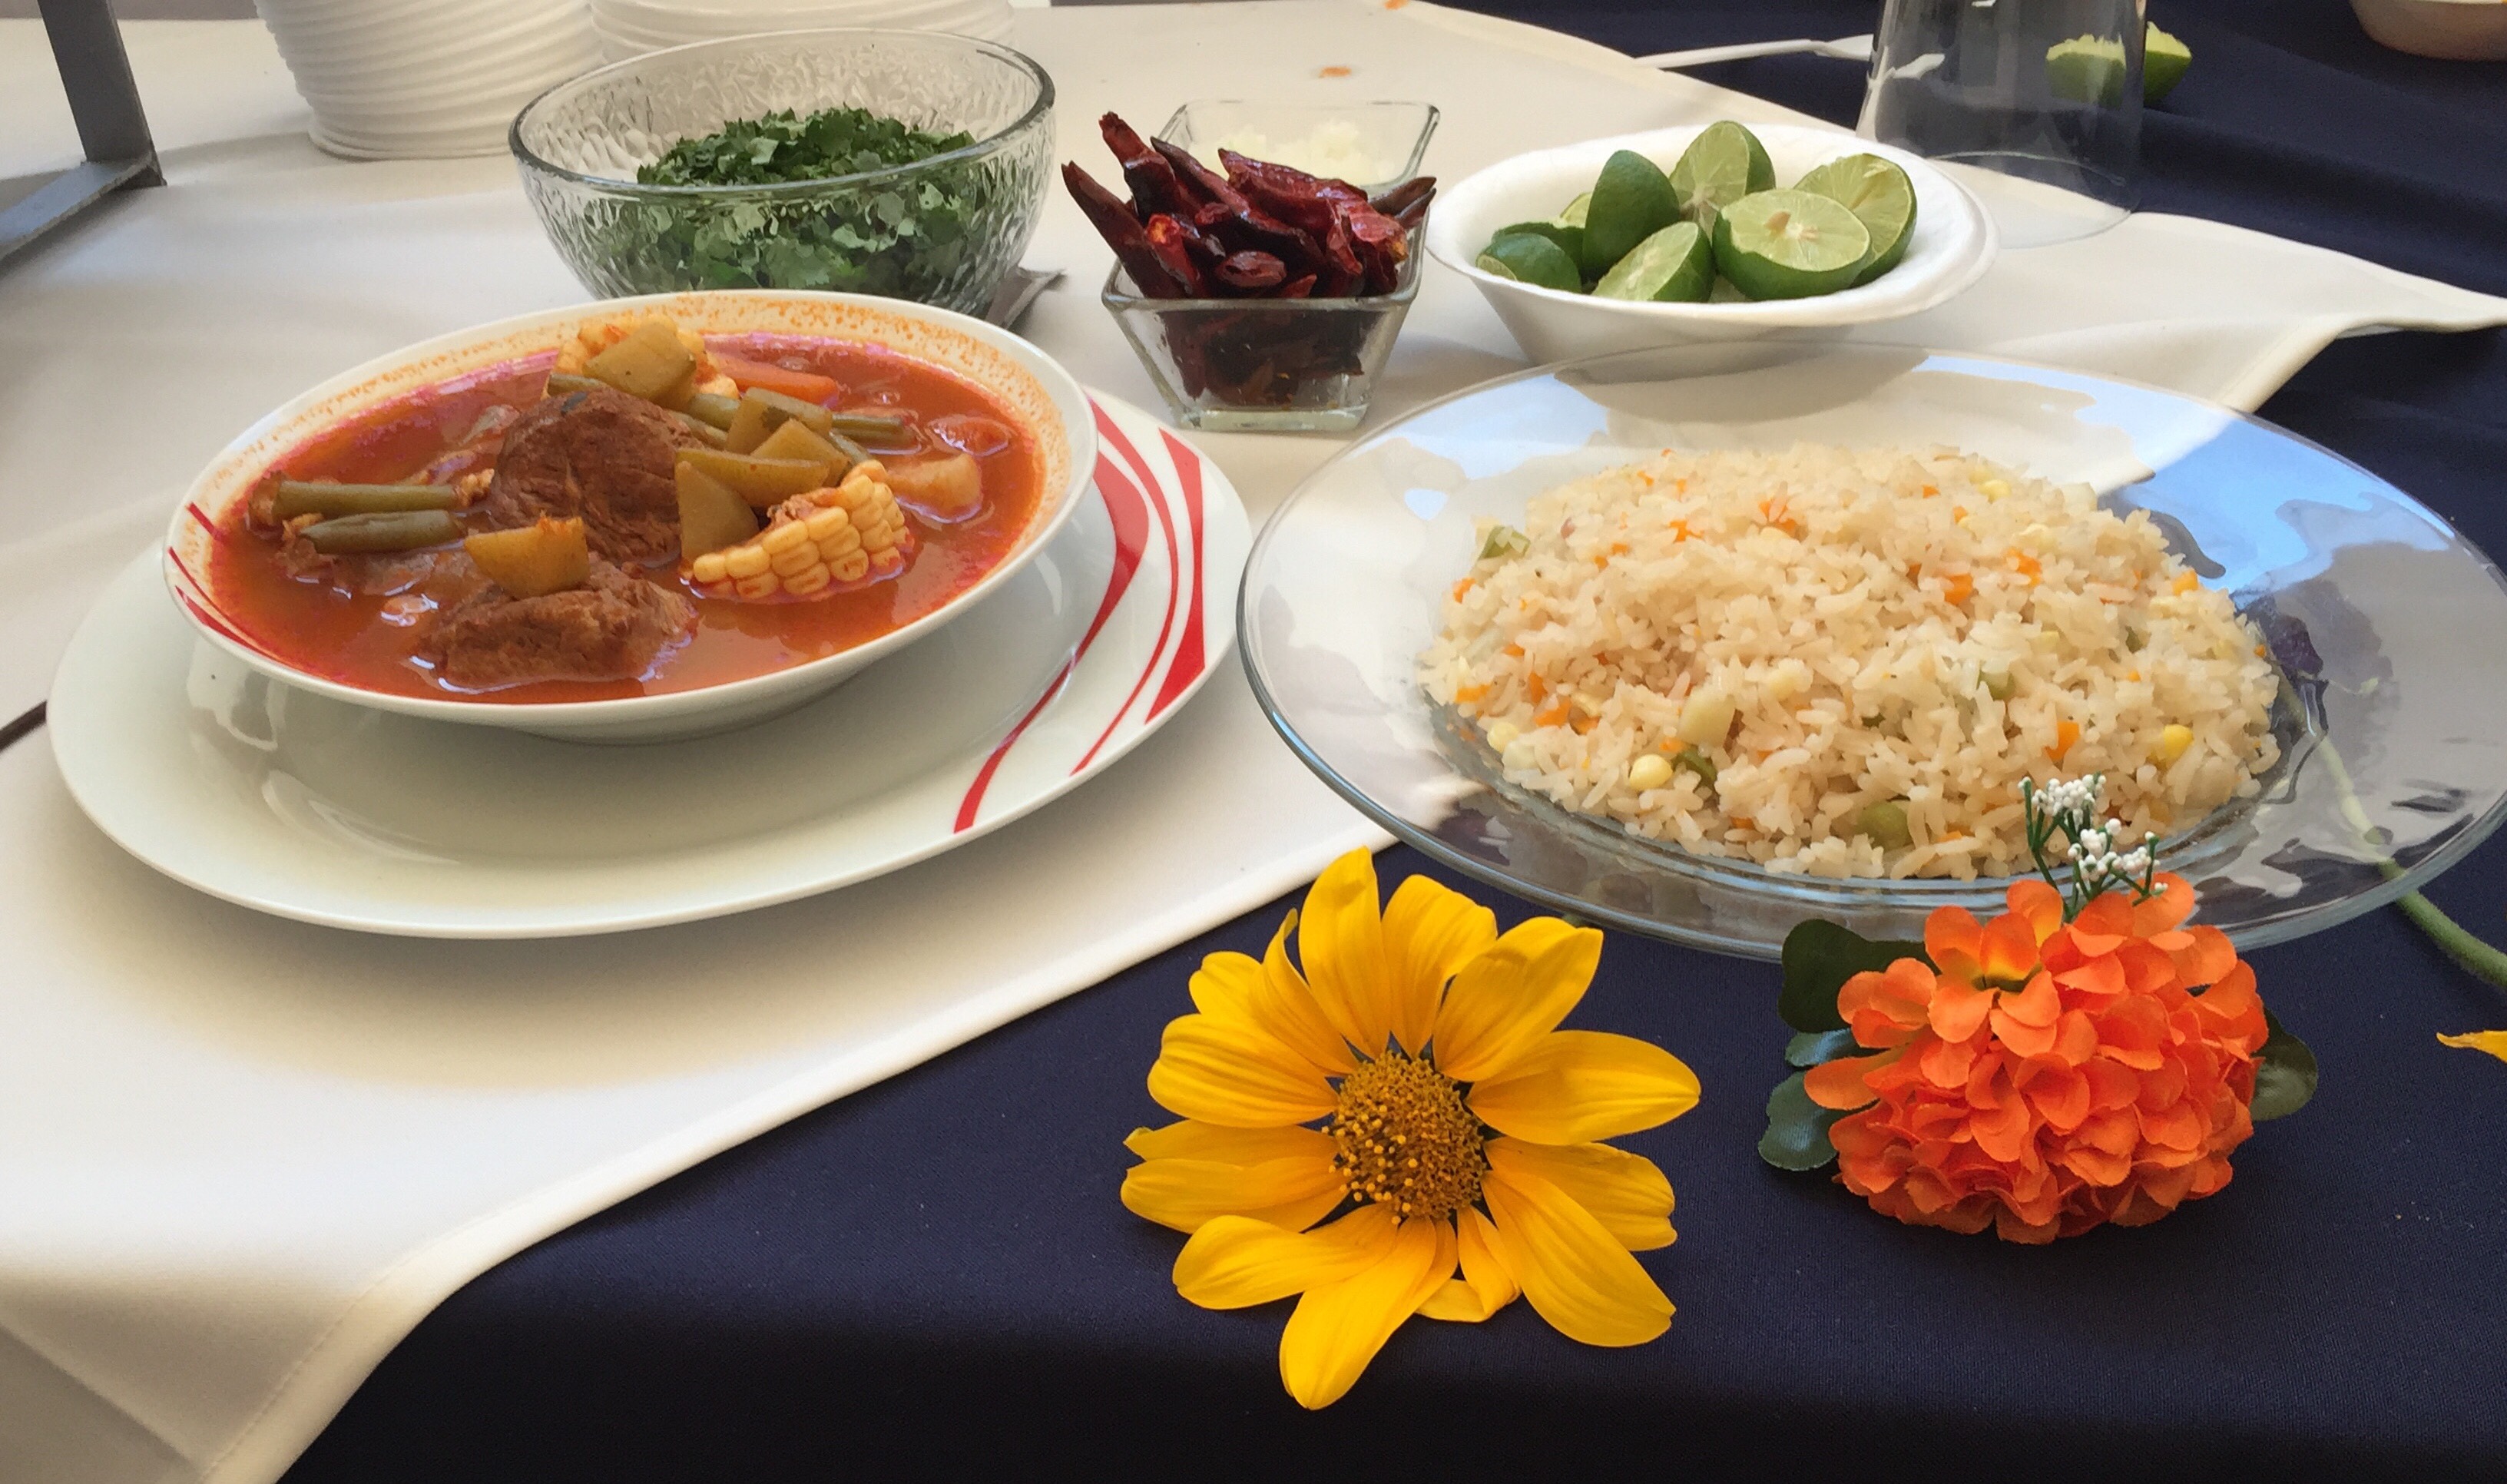  Por Día Mundial de la Alimentación, municipio de Querétaro organiza muestra gastronómica